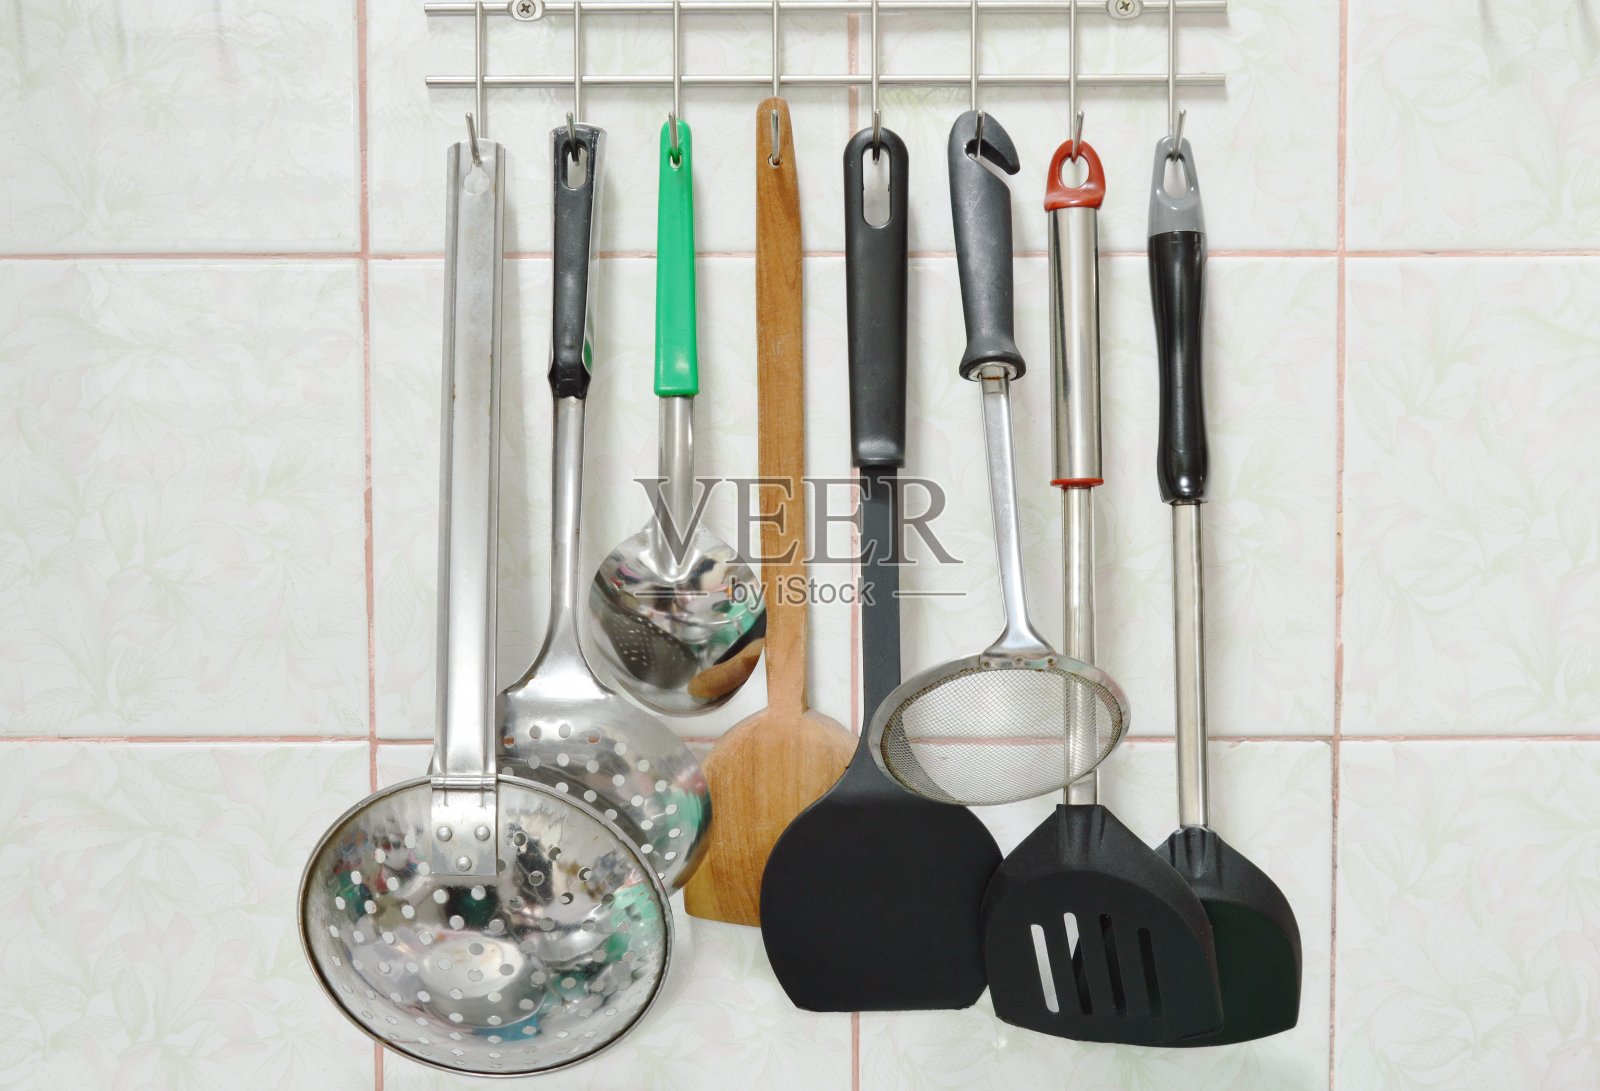 包瓣和滤锅与其他厨房用具移动在不锈钢衣架上照片摄影图片